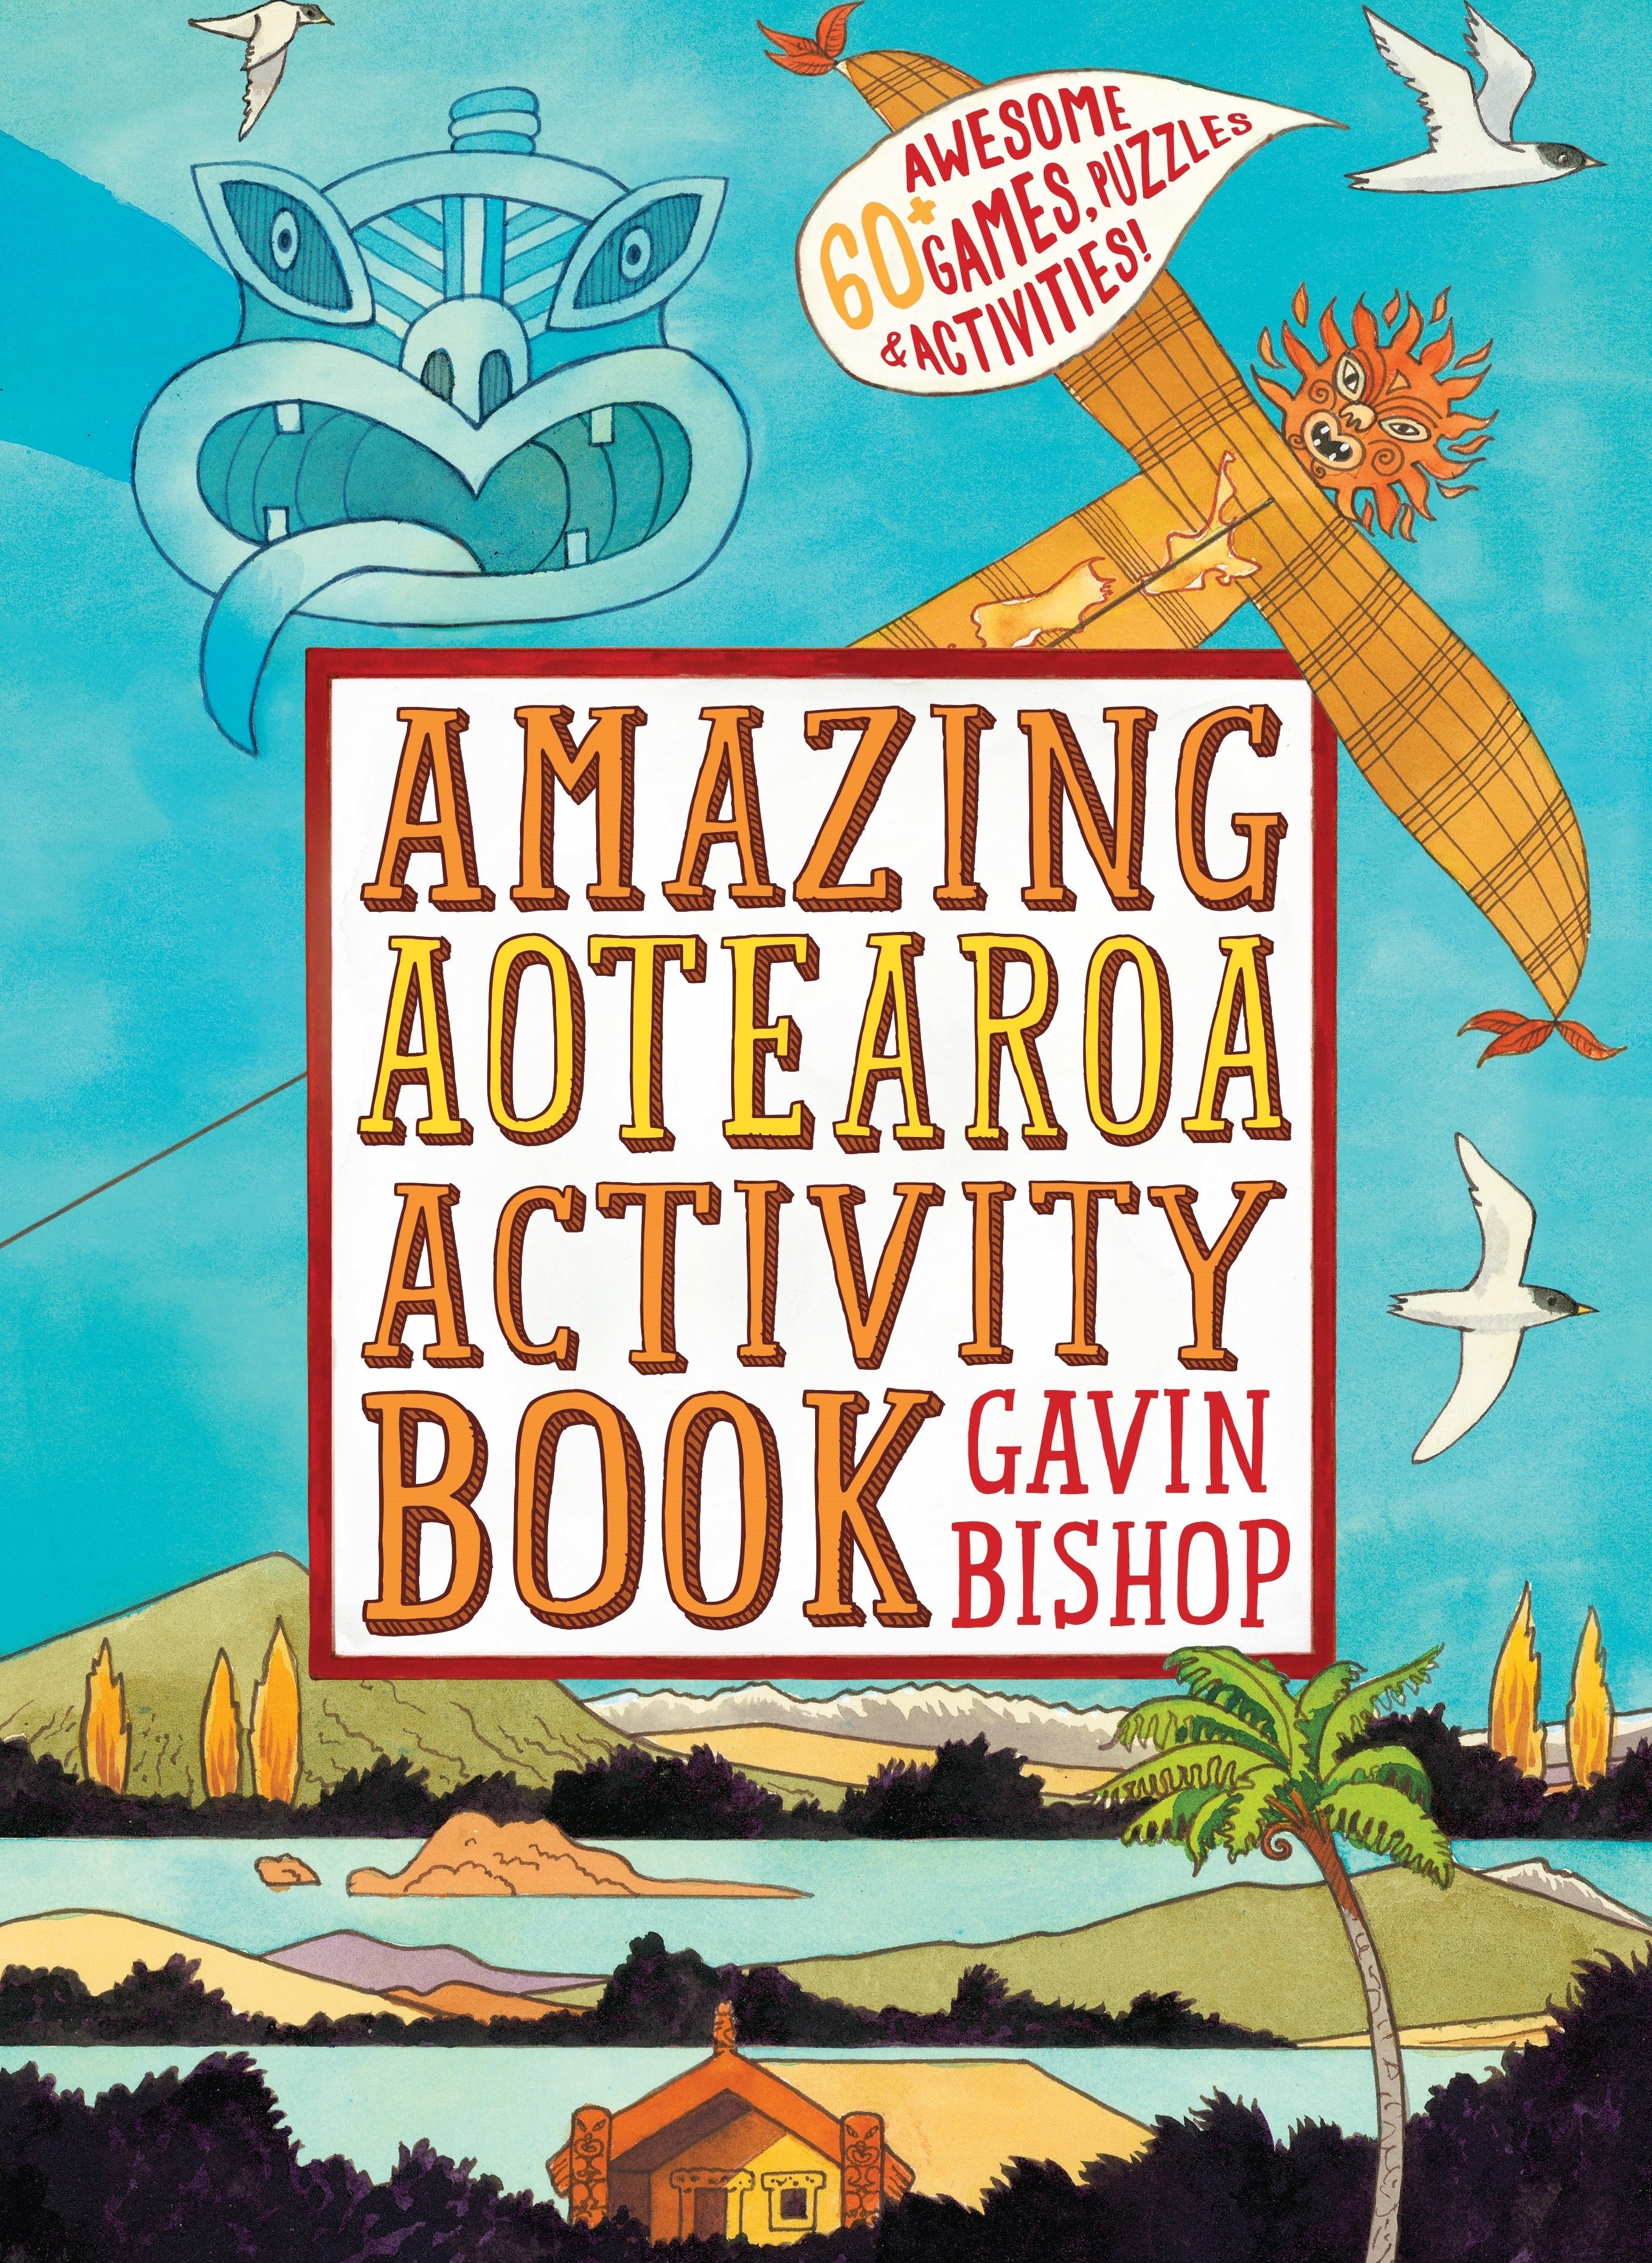 Amazing Aotearoa Activity Book